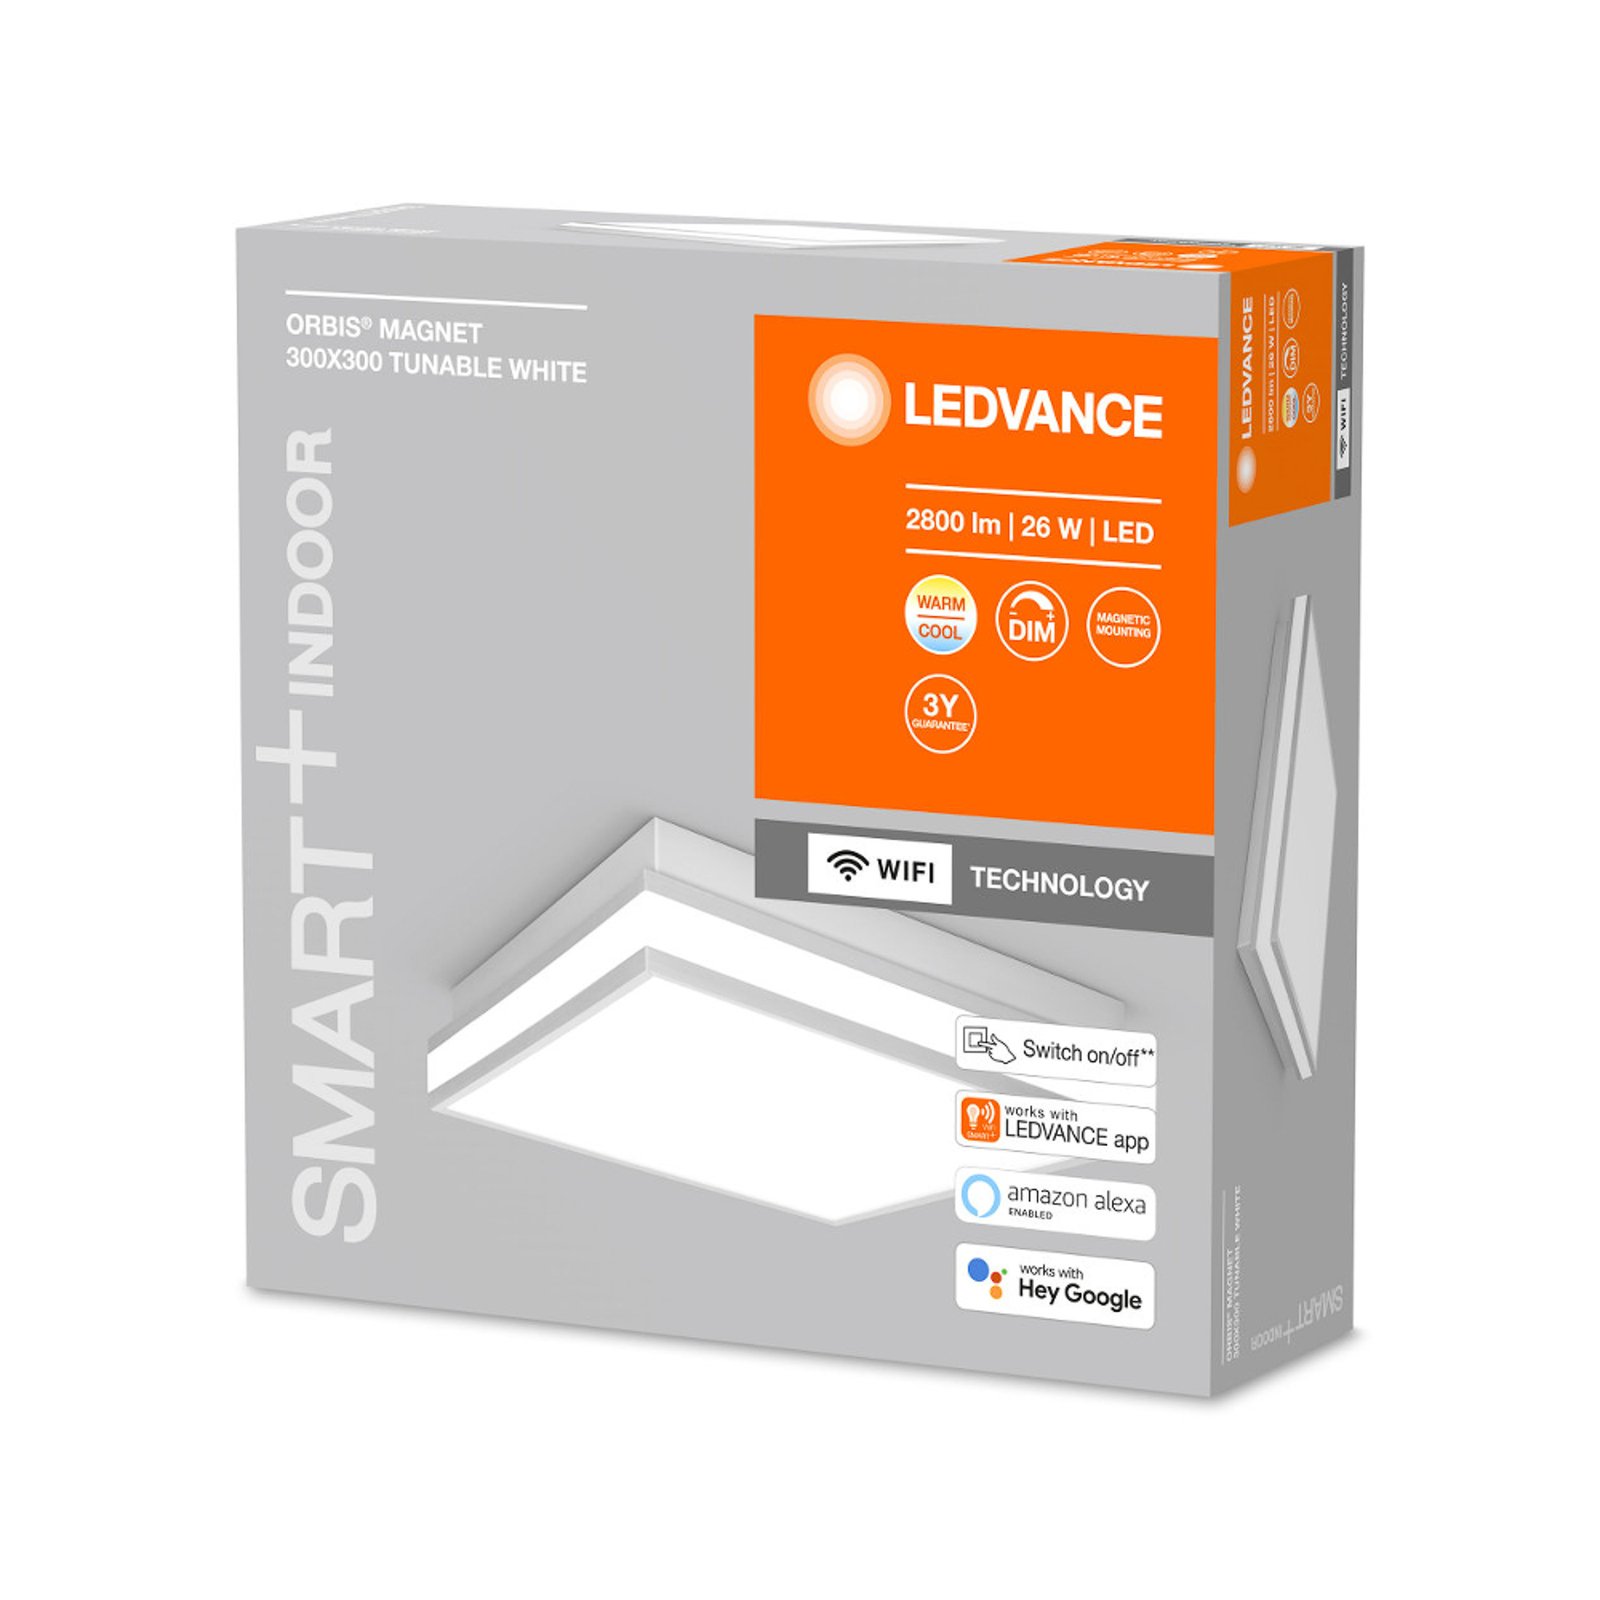 LEDVANCE SMART+ WiFi Orbis Magnet grijs, 30x30cm